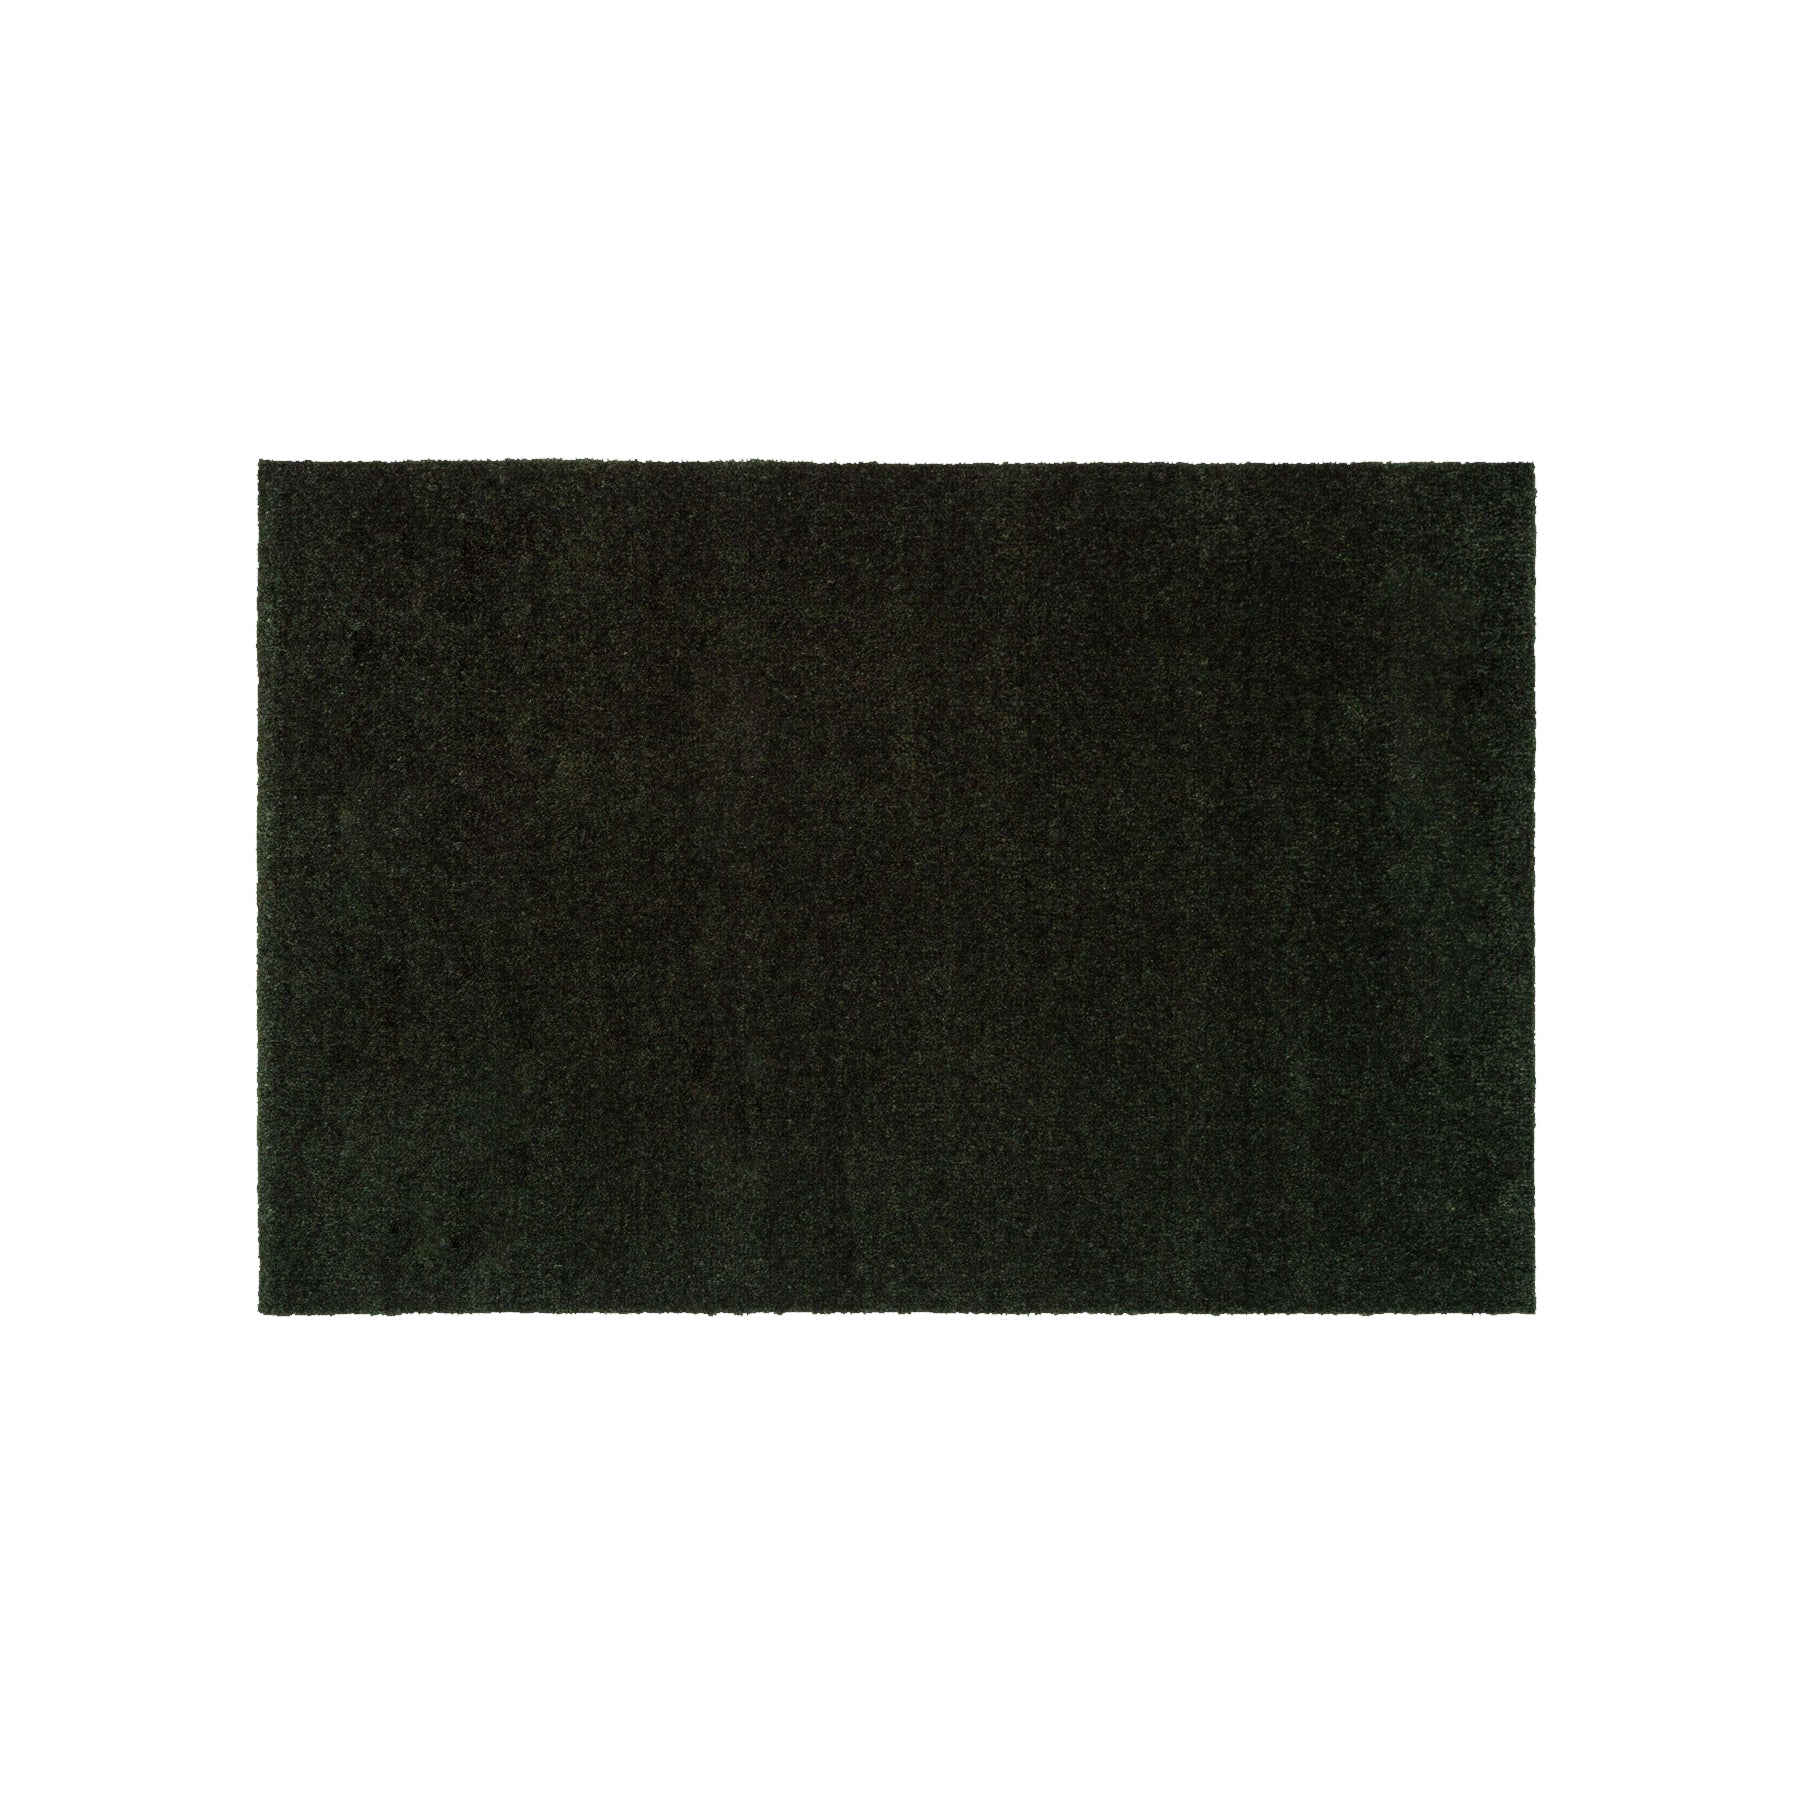 Mate de piso 40 x 60 cm - Cor de cor/verde escuro